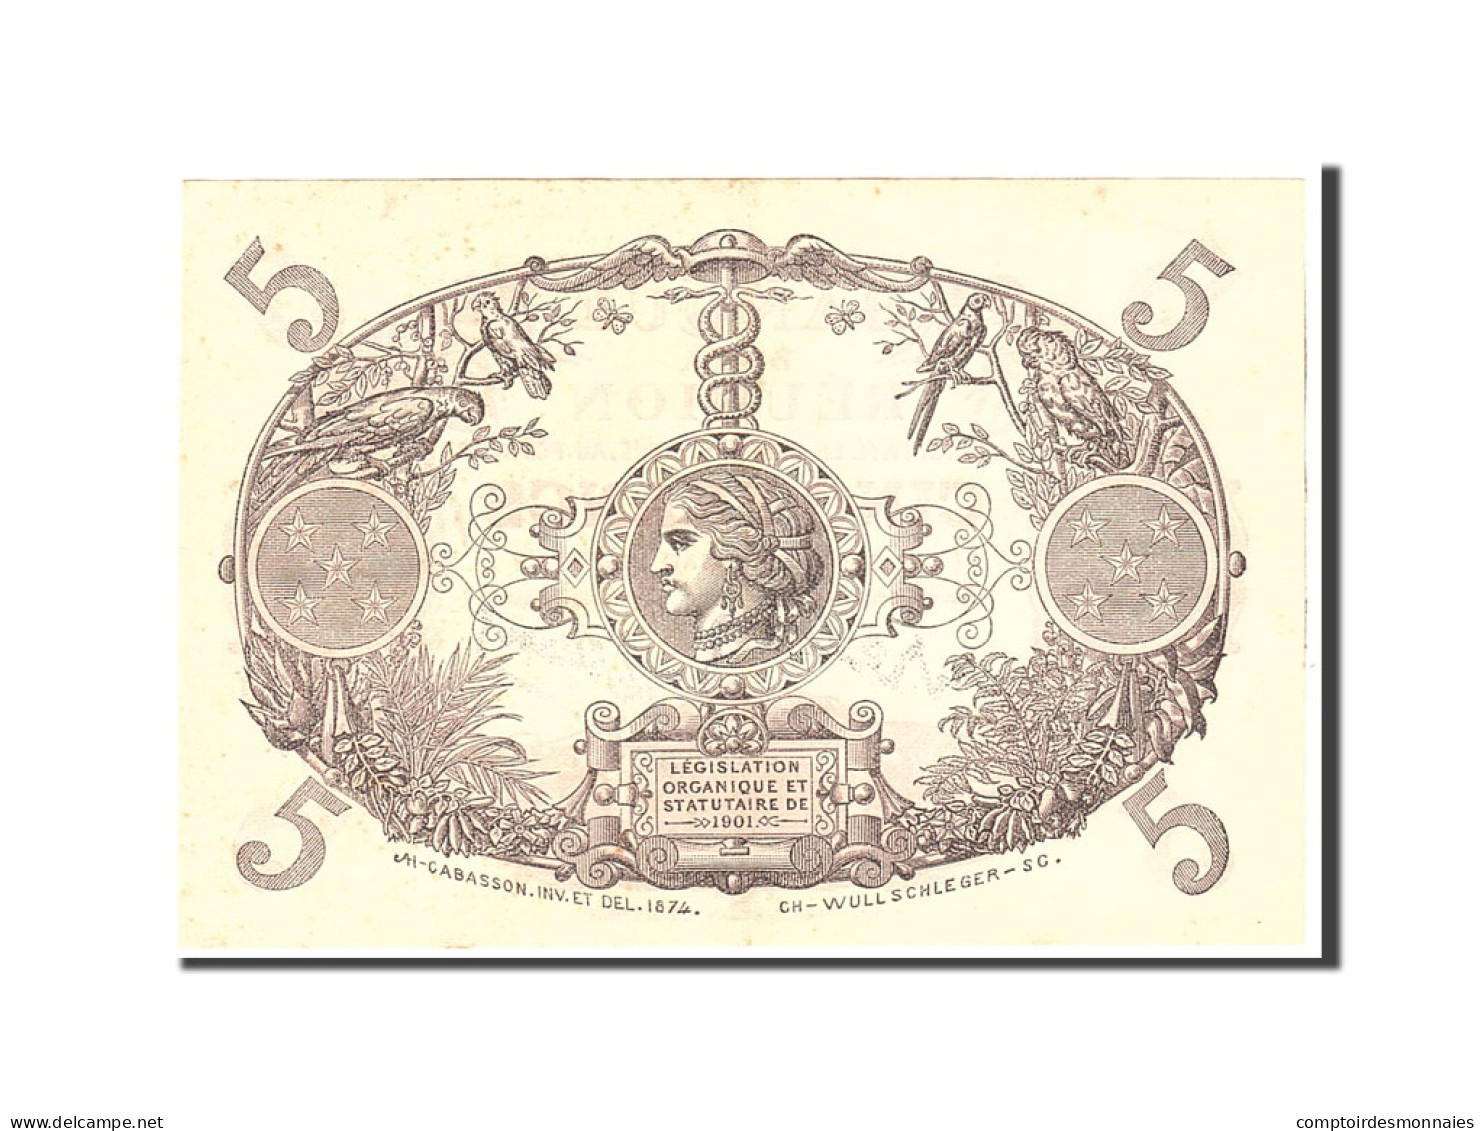 Billet, Réunion, 5 Francs, 1944, Undated, KM:14, SUP - Papeete (Polynésie Française 1914-1985)